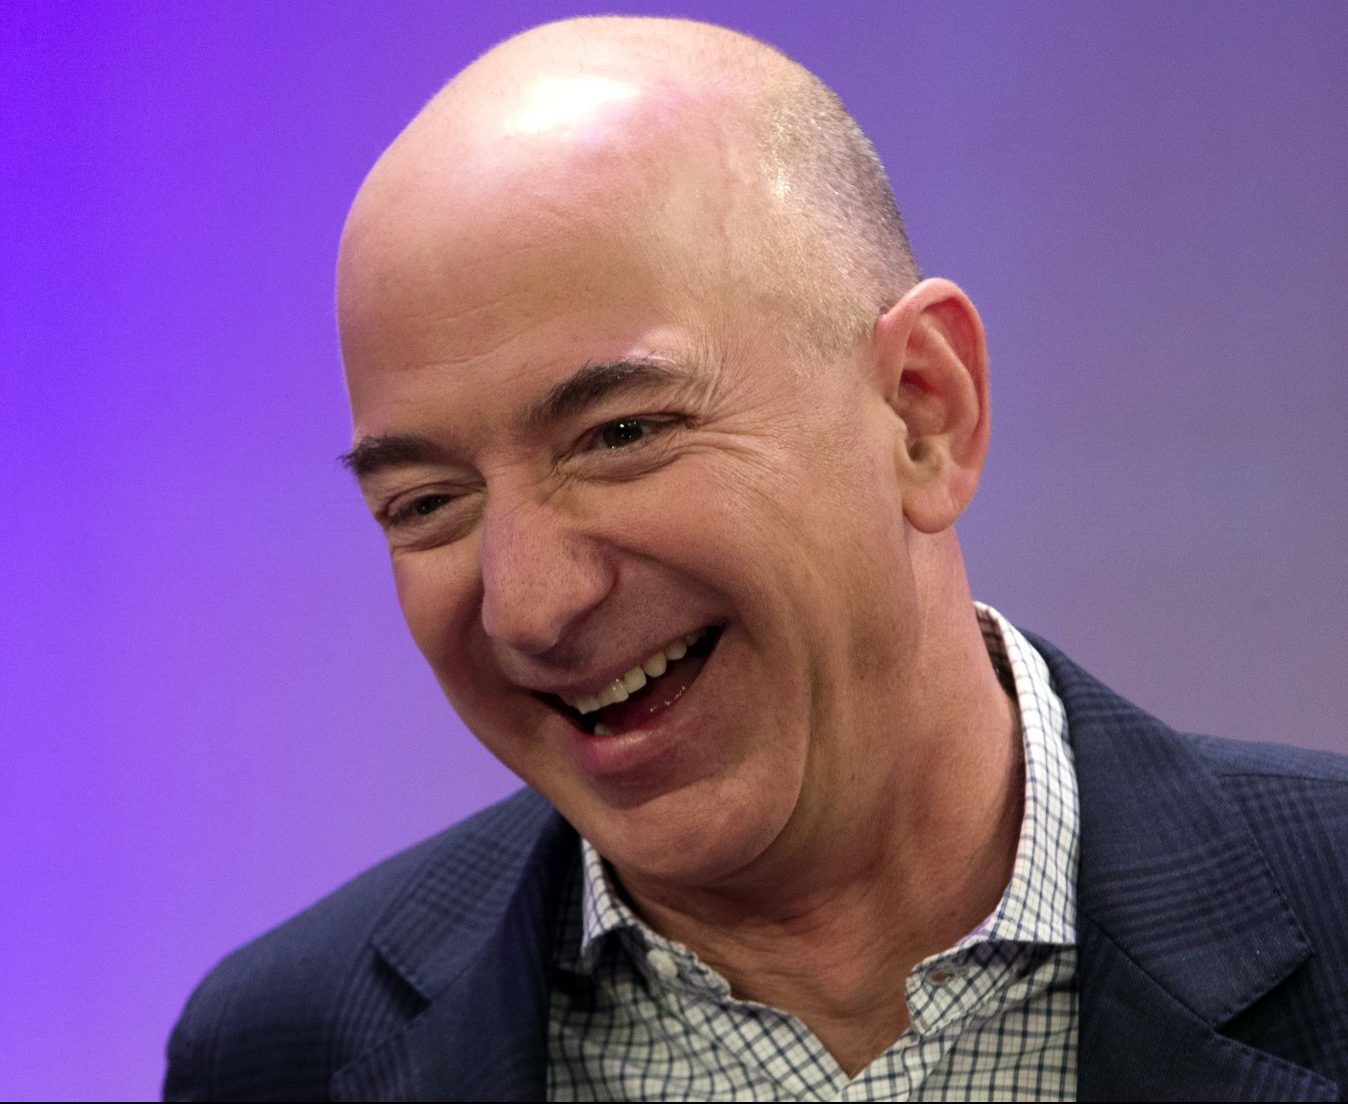 Jeff Bezos laughing